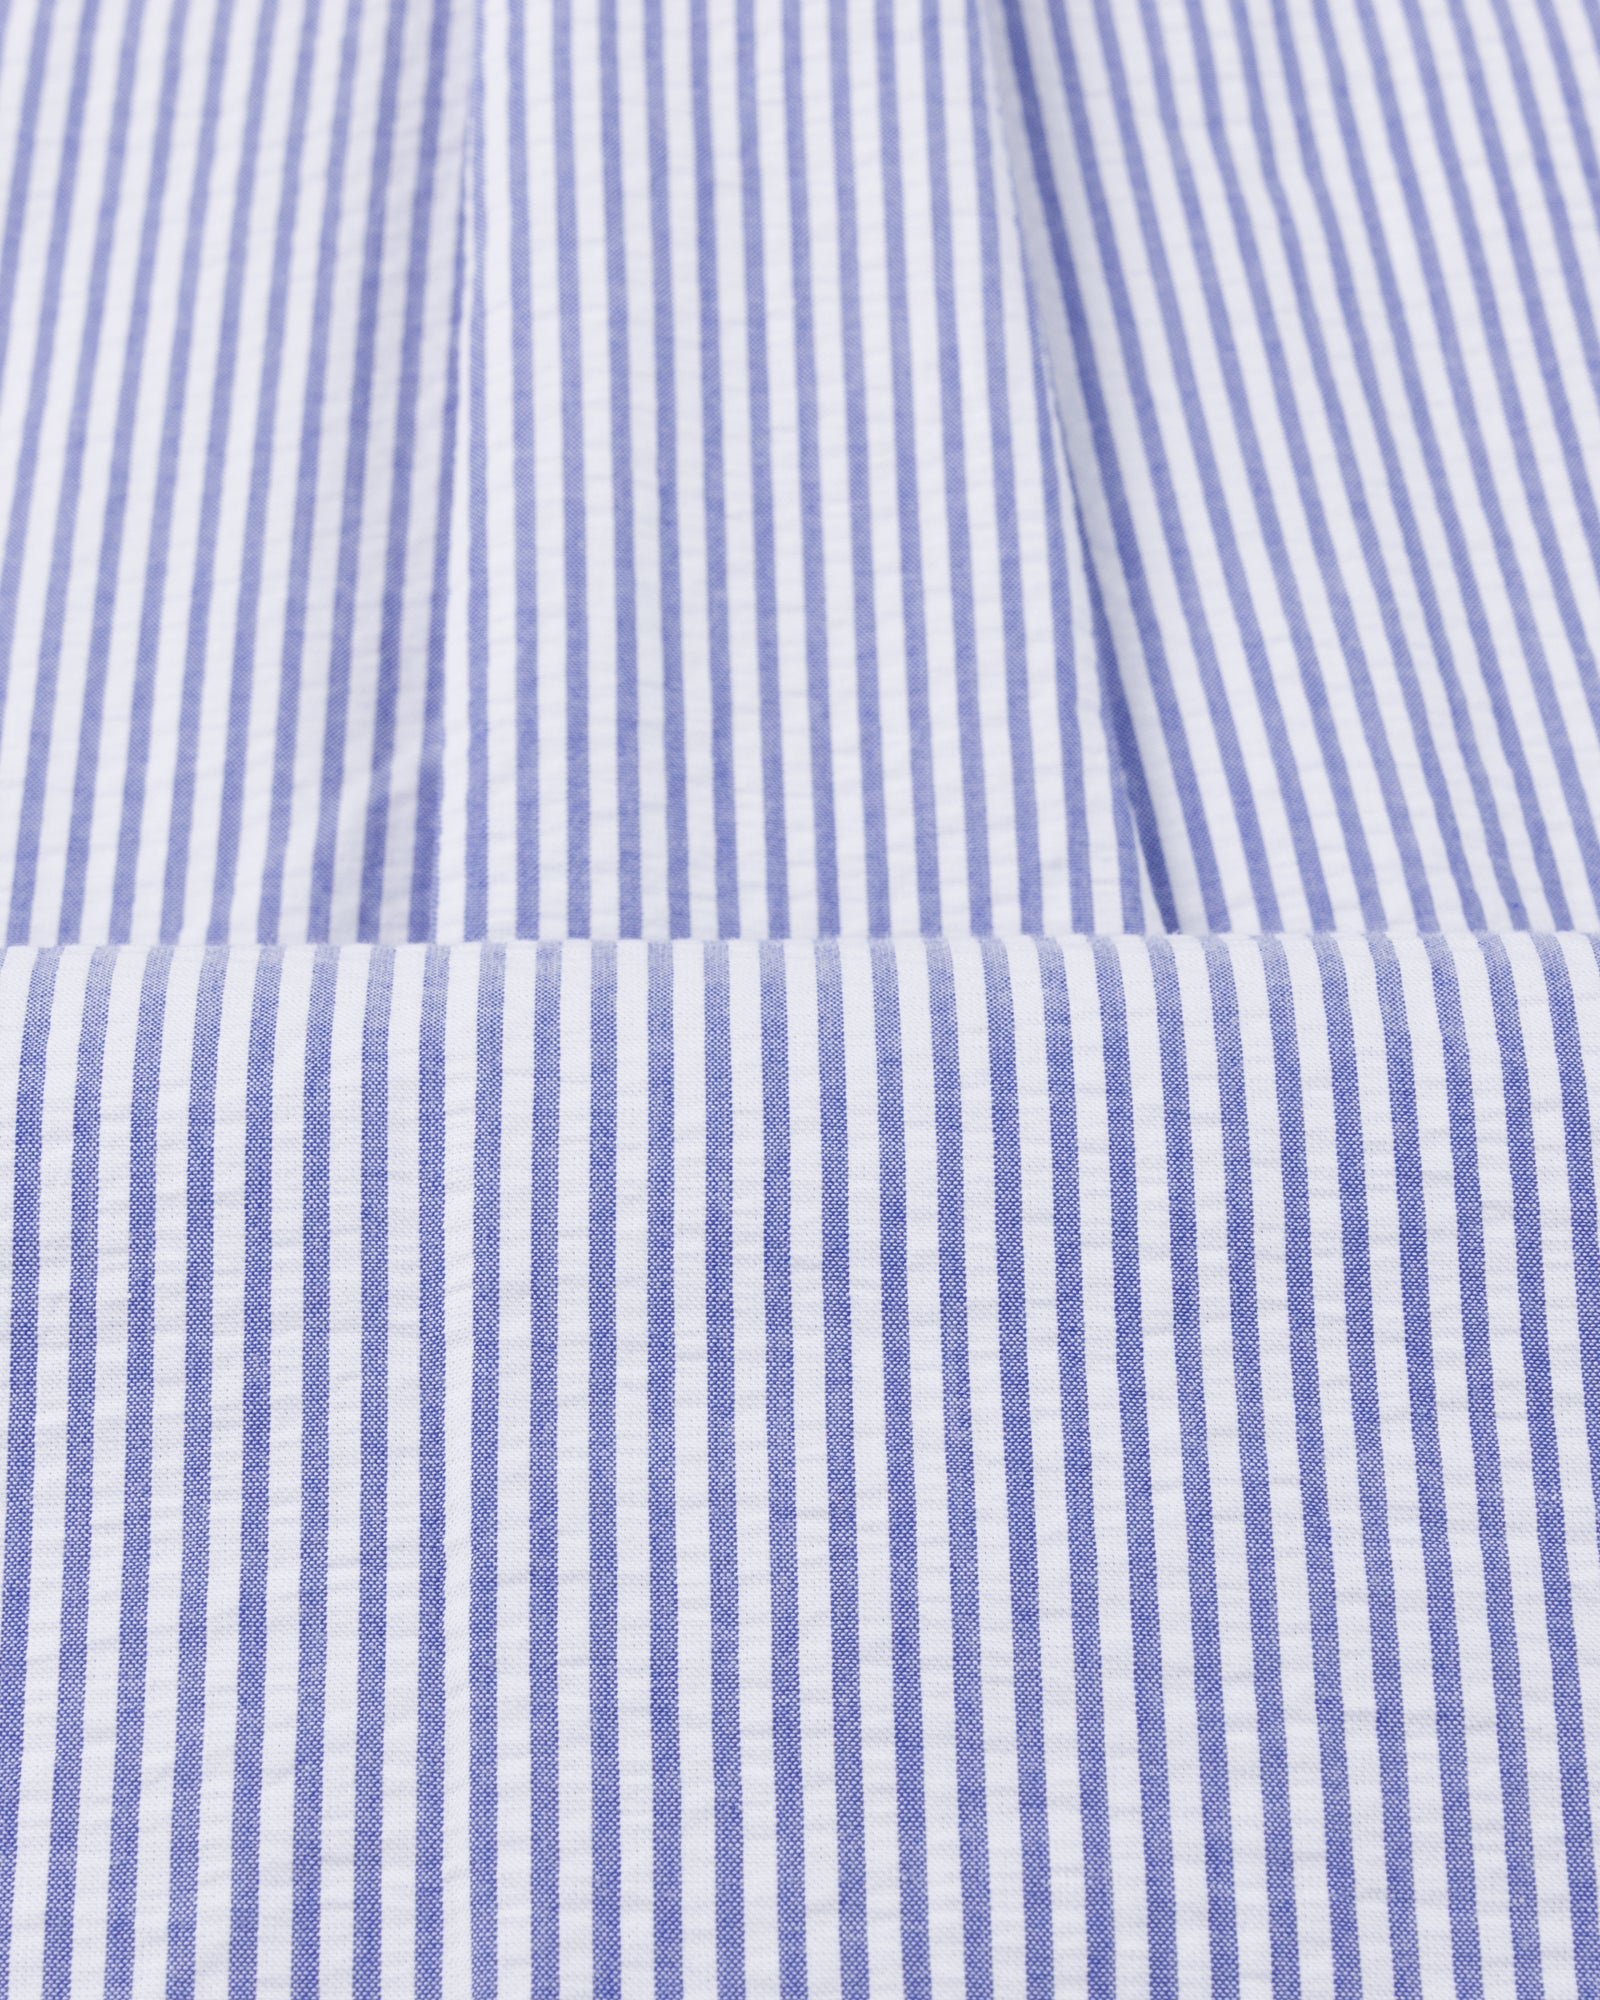 Button Down Collar Shirt - Navy Stripe Cotton Seersucker